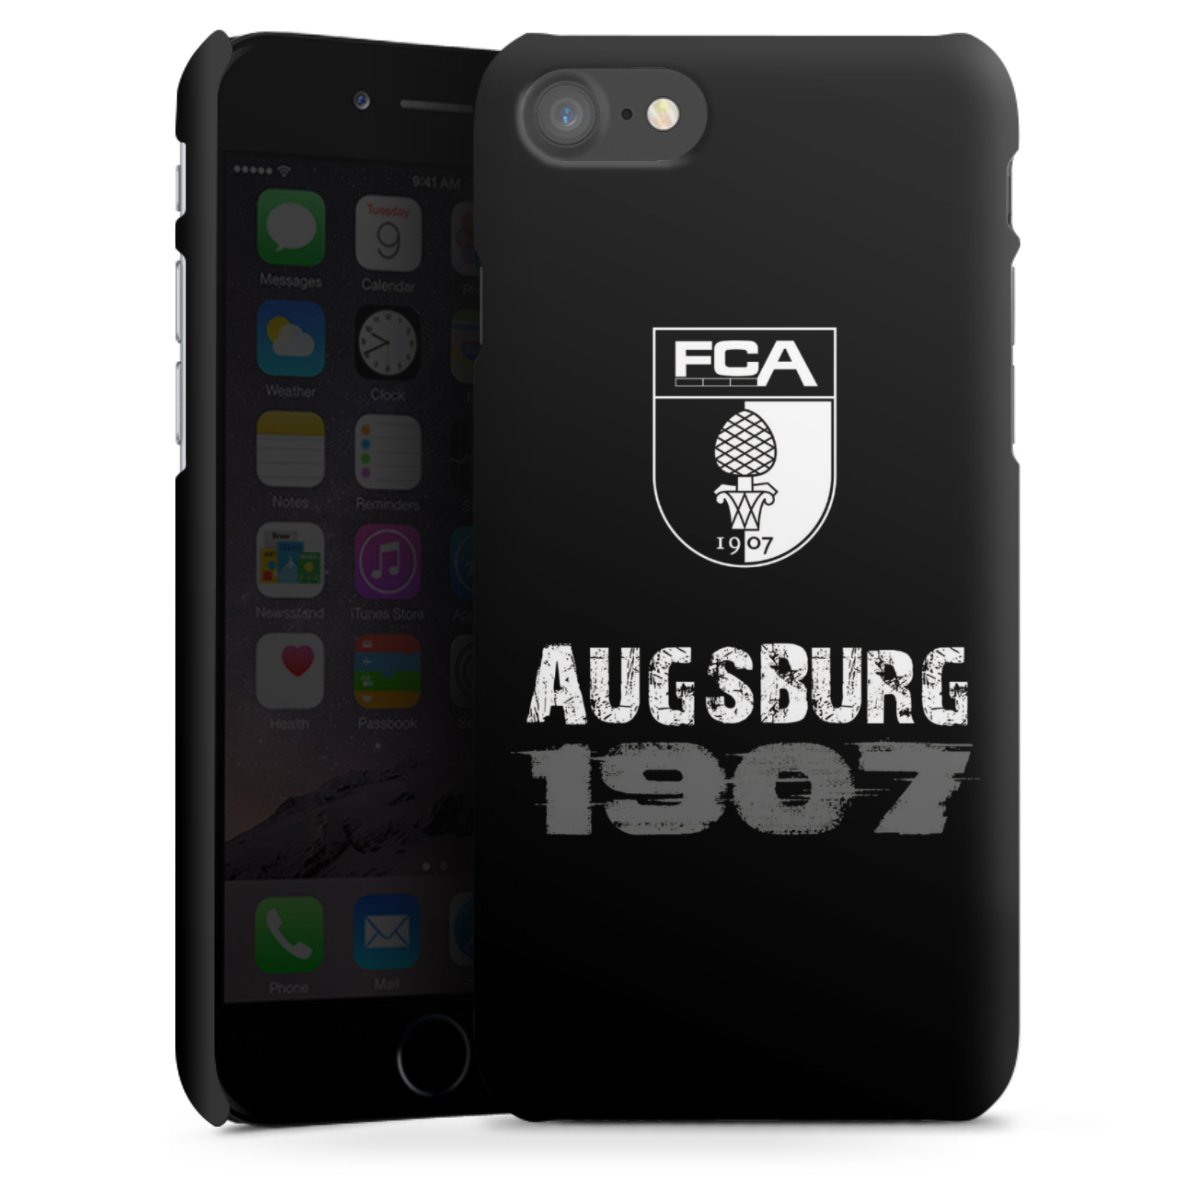 Augsburg 1907 - Schwarz